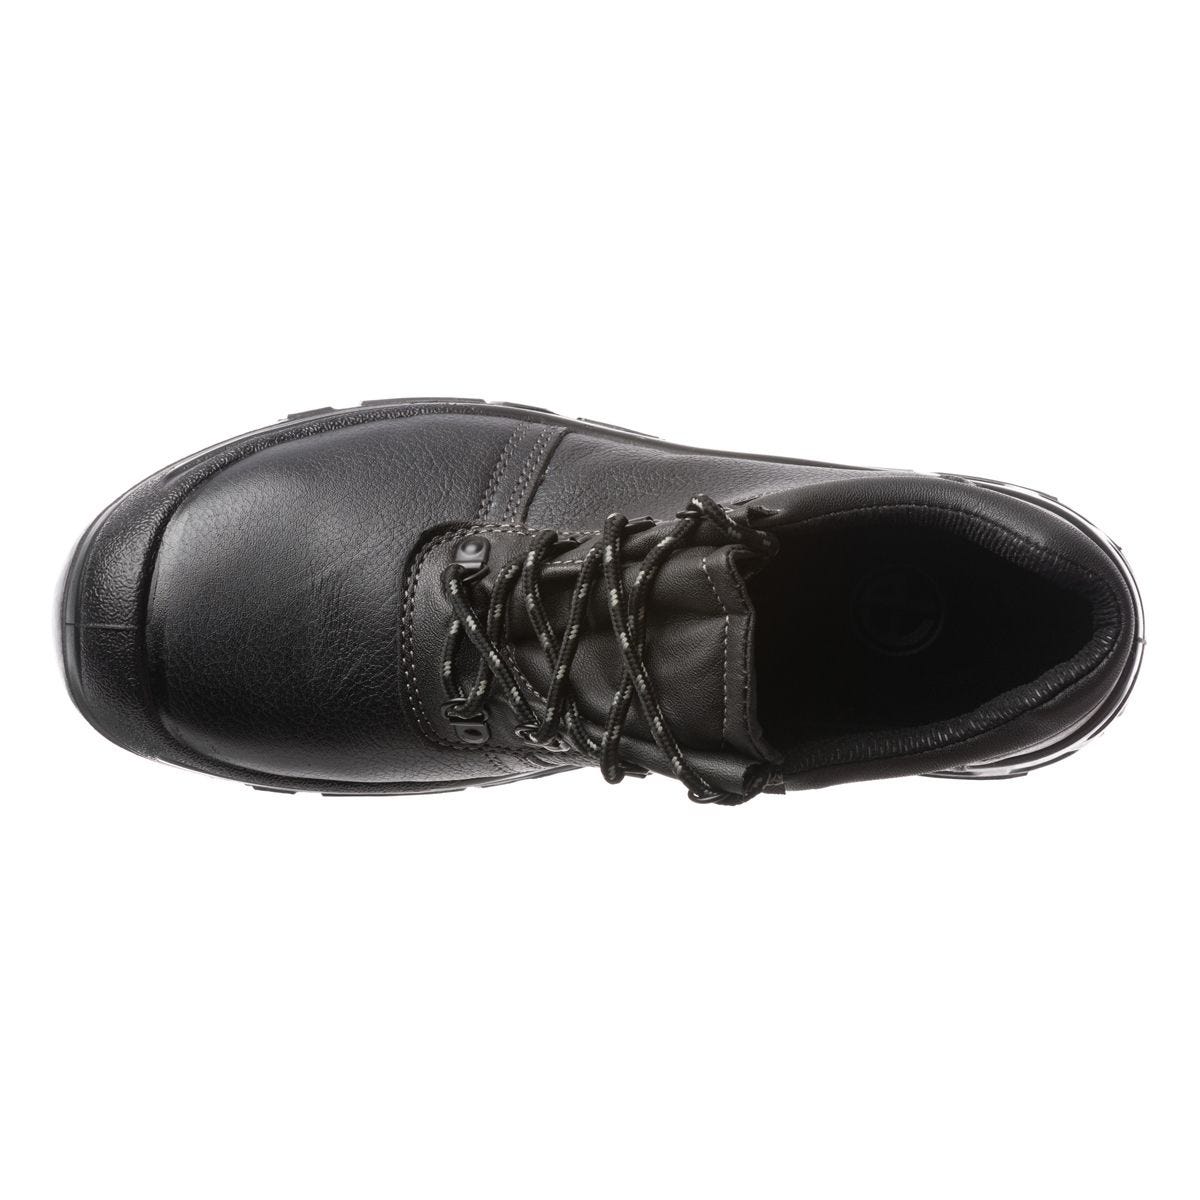 Chaussures de sécurité basses Azurite II S3 ESD noir - Coverguard - Taille 36 1